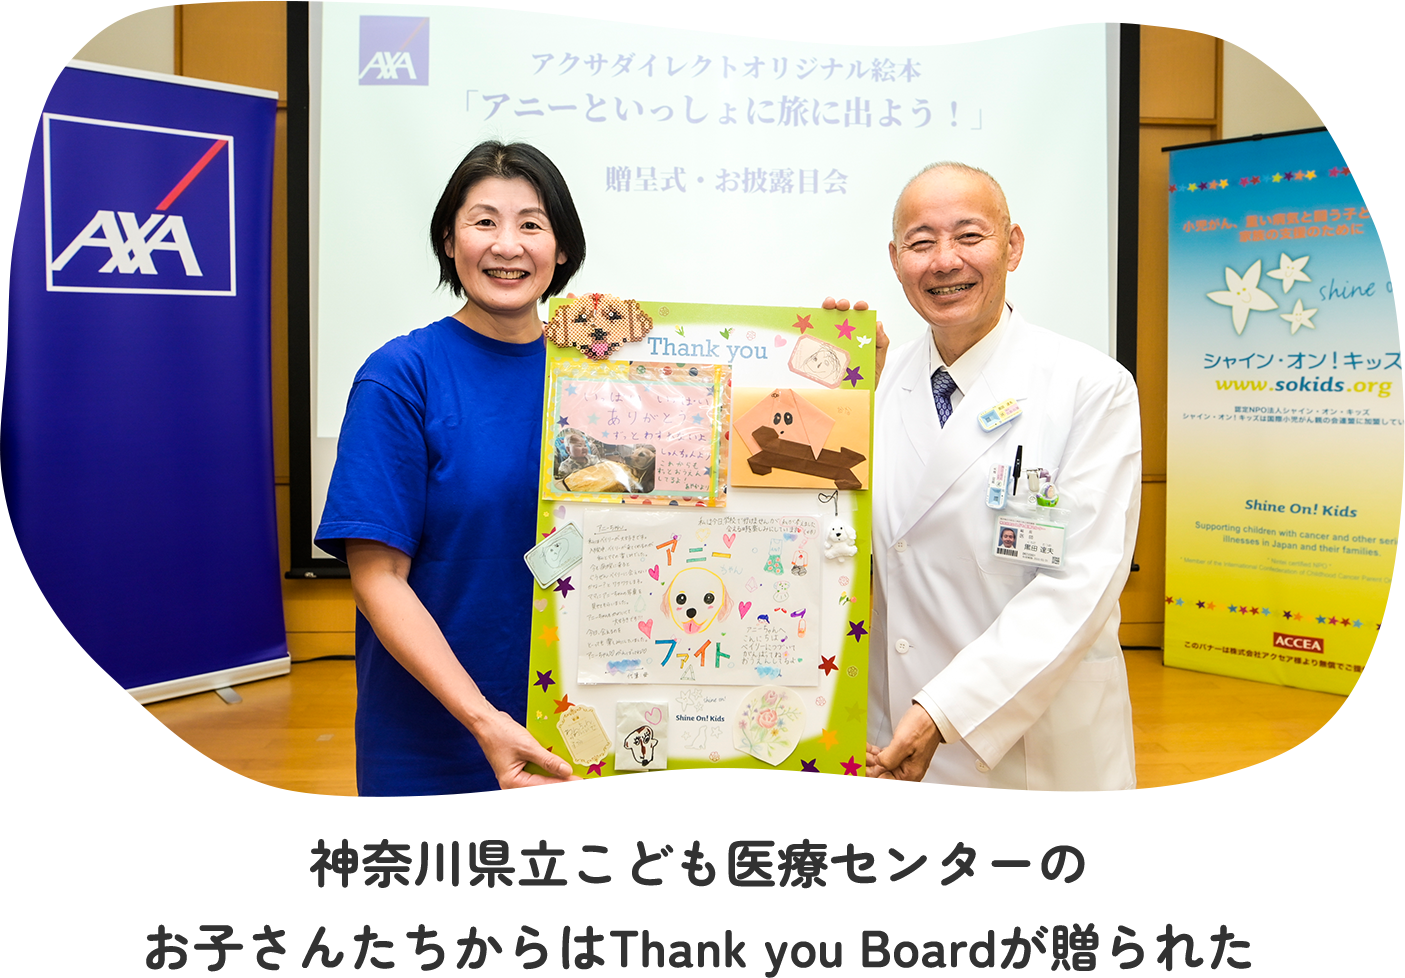 神奈川県立こども医療センターのお子さんたちからはThank you Boardが贈られた